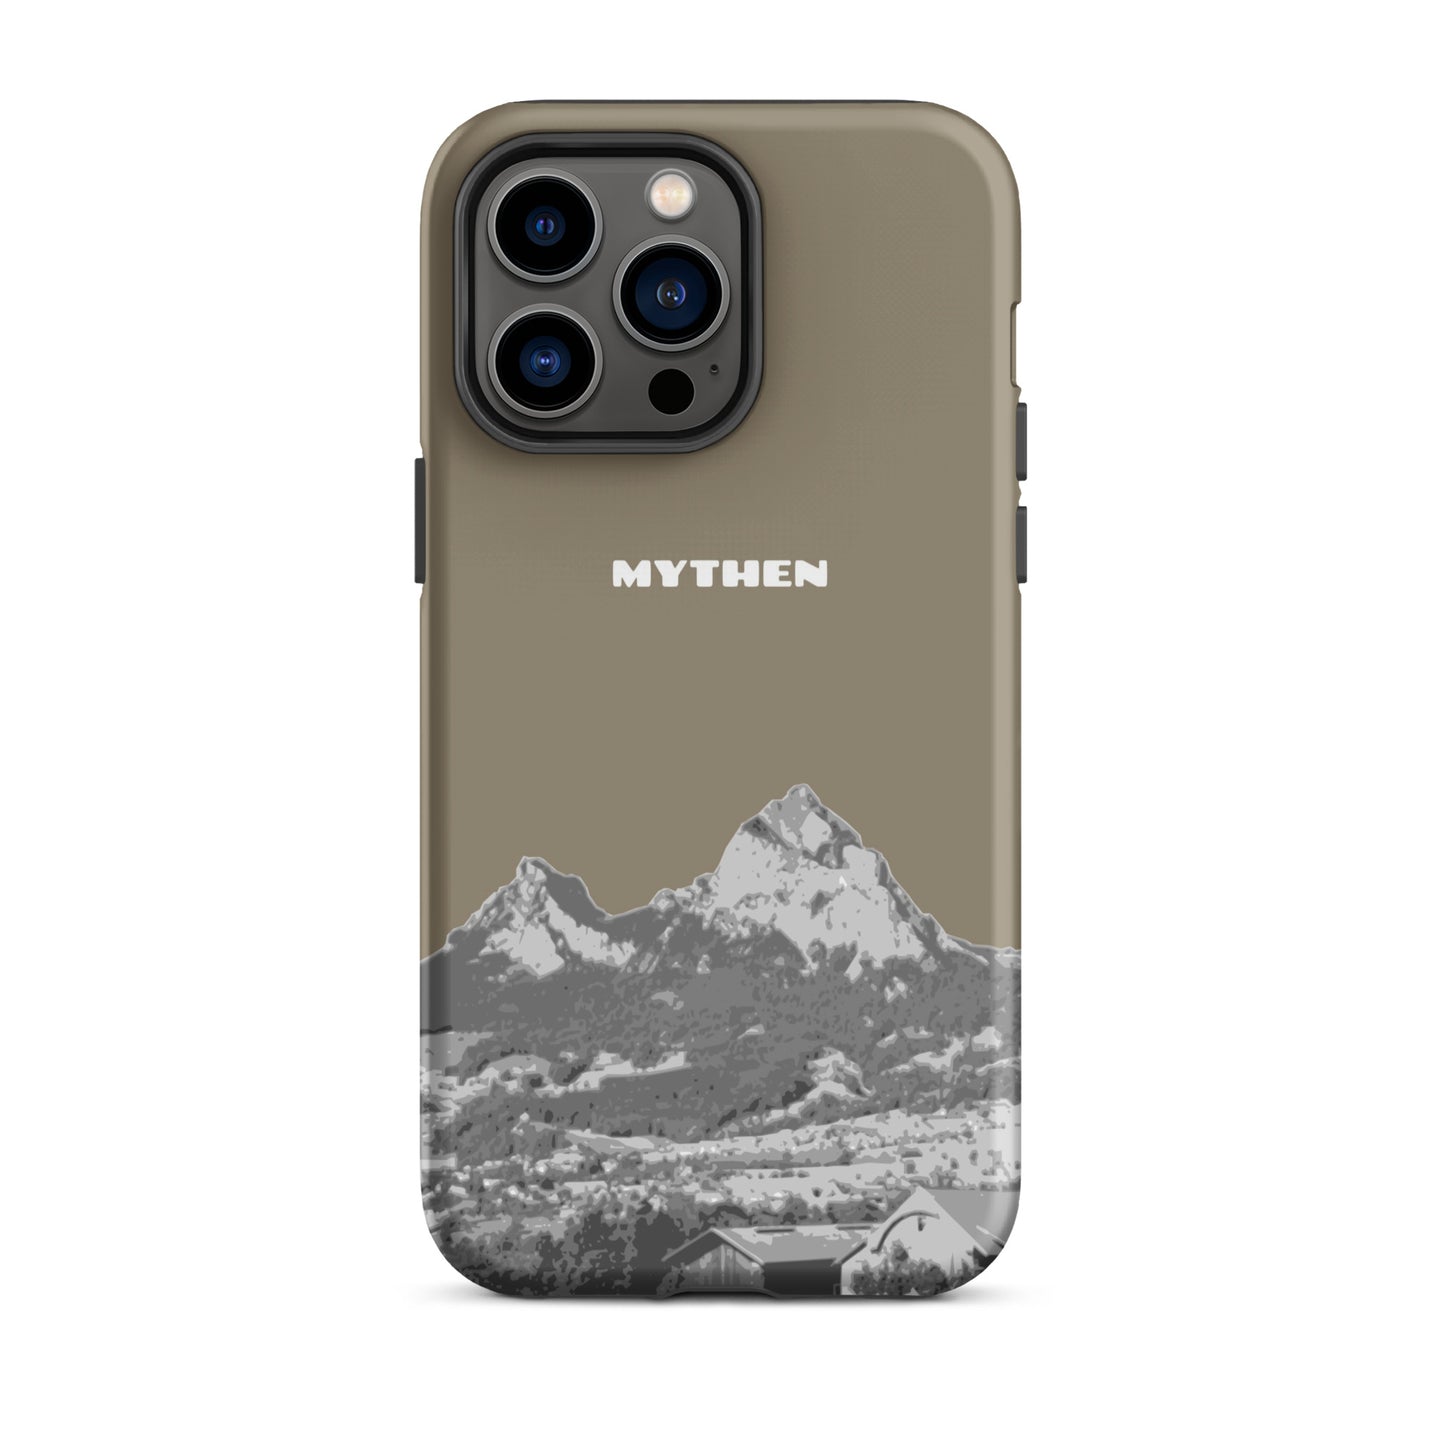 Hülle für das iPhone 14 Pro Max von Apple in der Farbe Graubraun, dass den Grossen Mythen und den Kleinen Mythen bei Schwyz zeigt. 